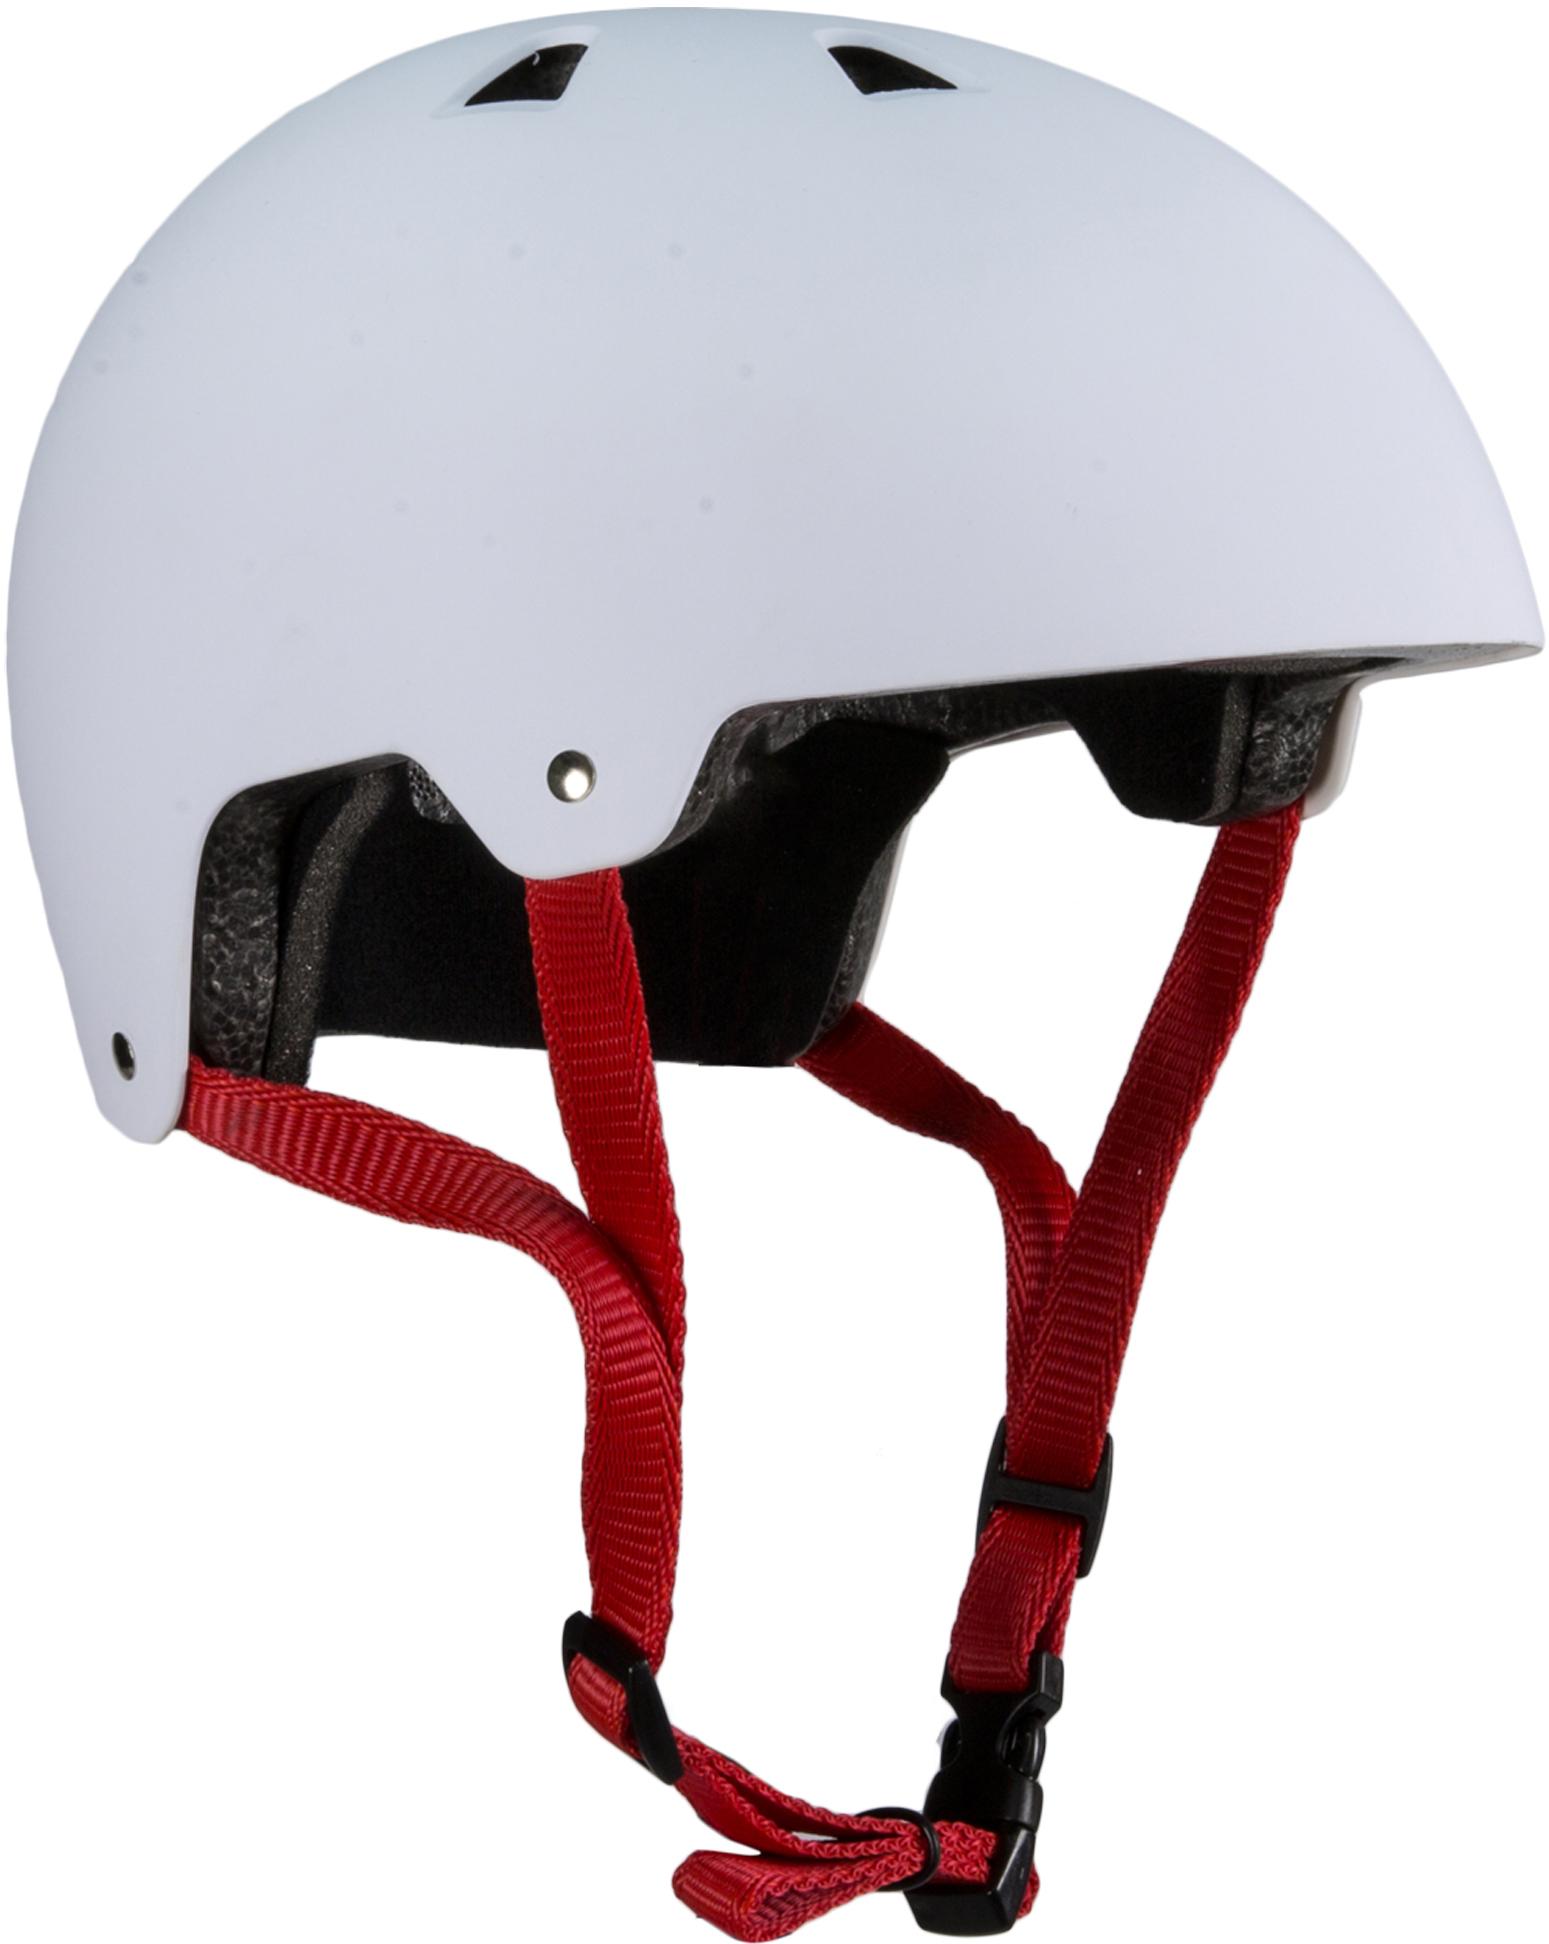 Harsh Abs Helmet White, Small (51-55Cm)